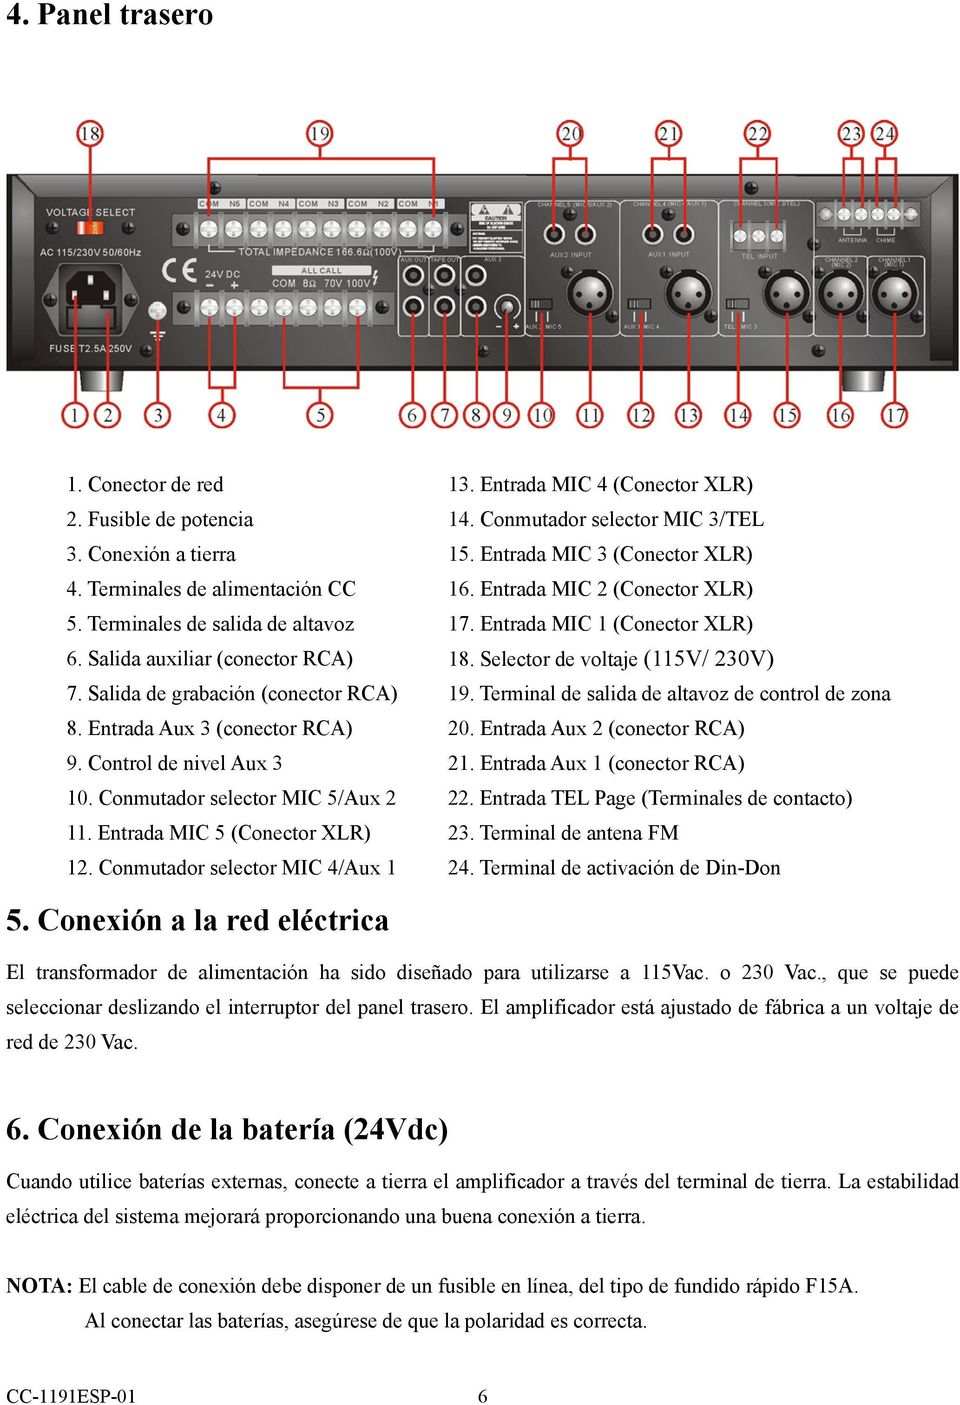 Selector de voltaje (115V/ 230V) 7. Salida de grabación (conector RCA) 19. Terminal de salida de altavoz de control de zona 8. Entrada Aux 3 (conector RCA) 20. Entrada Aux 2 (conector RCA) 9.